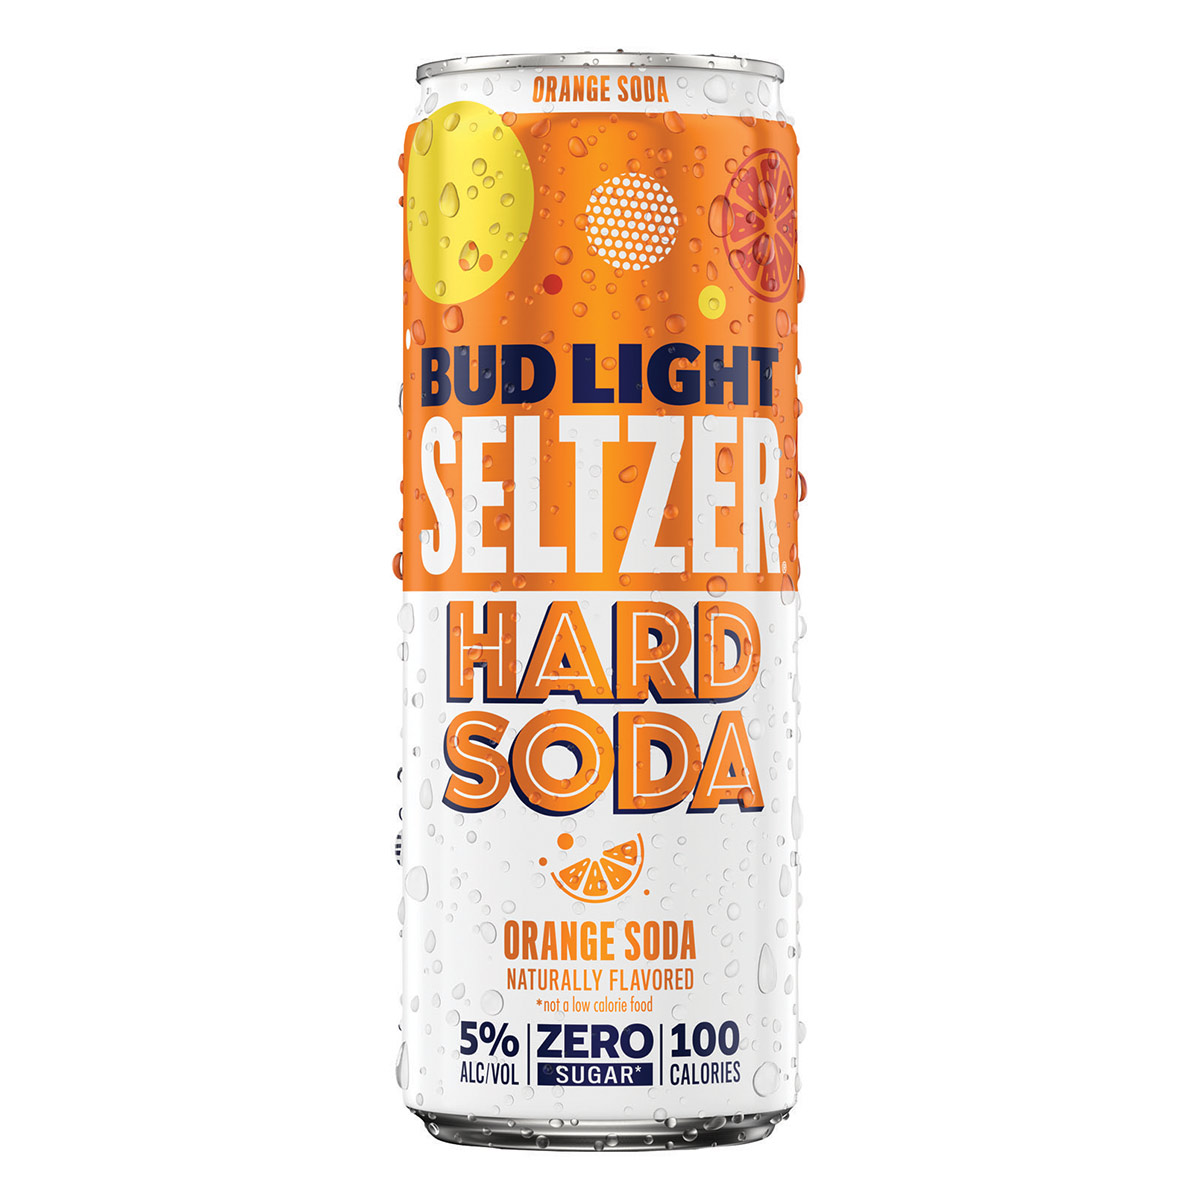 Hard Soda: Orange Soda